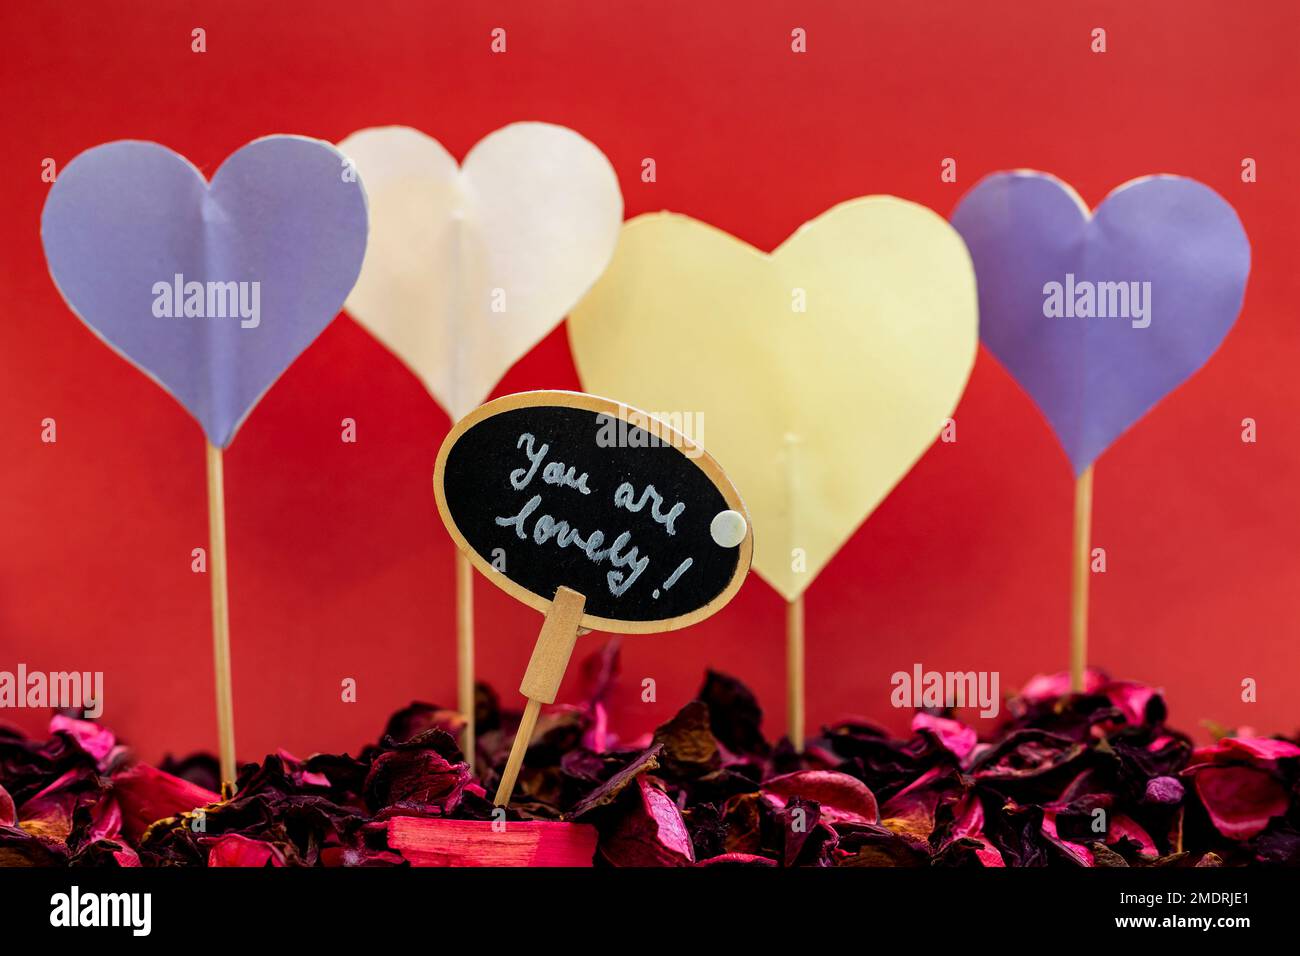 Liebesbotschaft auf einer runden Tafel zwischen mehreren Papierherzen mit Holzschwänzen auf rotem Hintergrund. Stockfoto